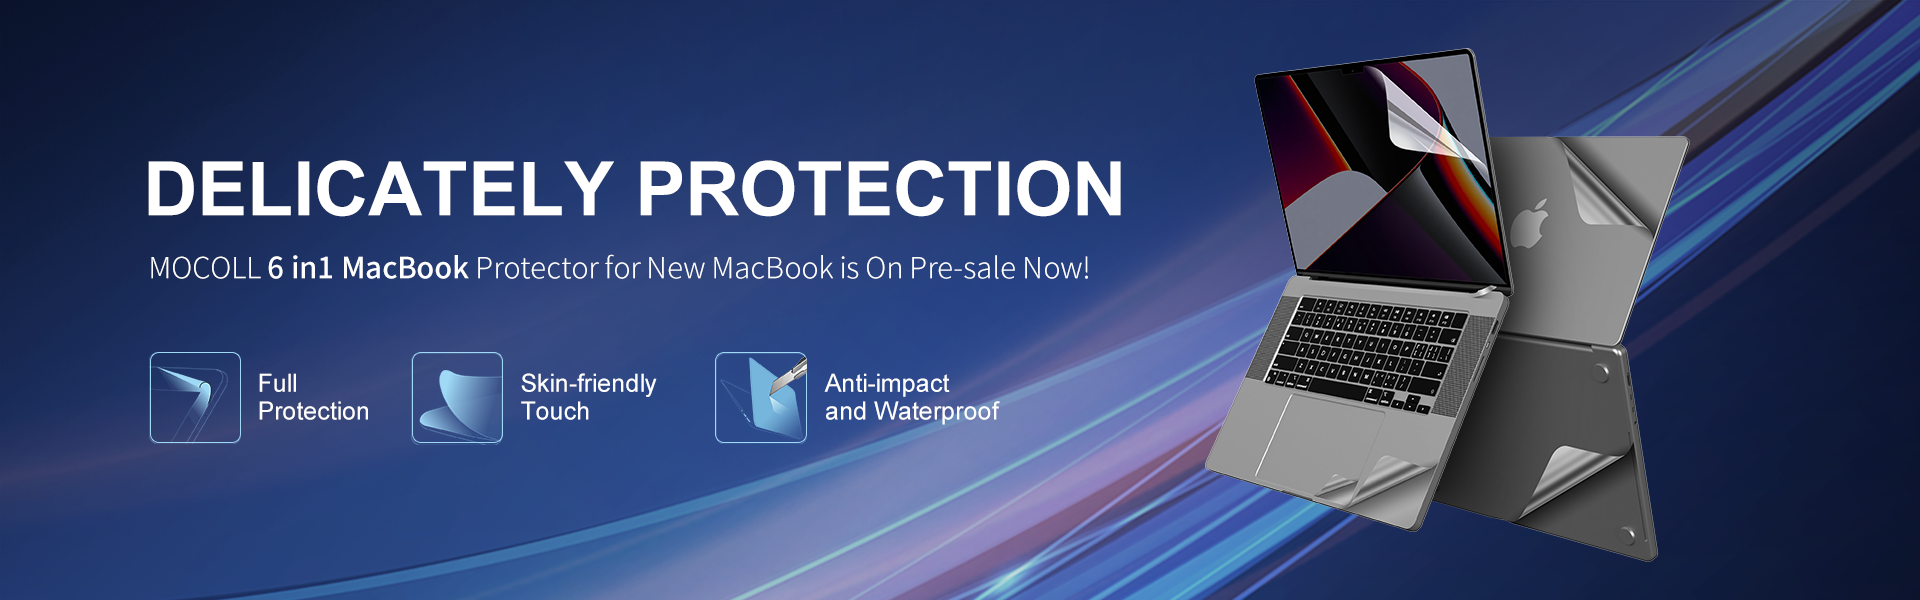 O novo protetor 6 em 1 para Macbook já está à venda!